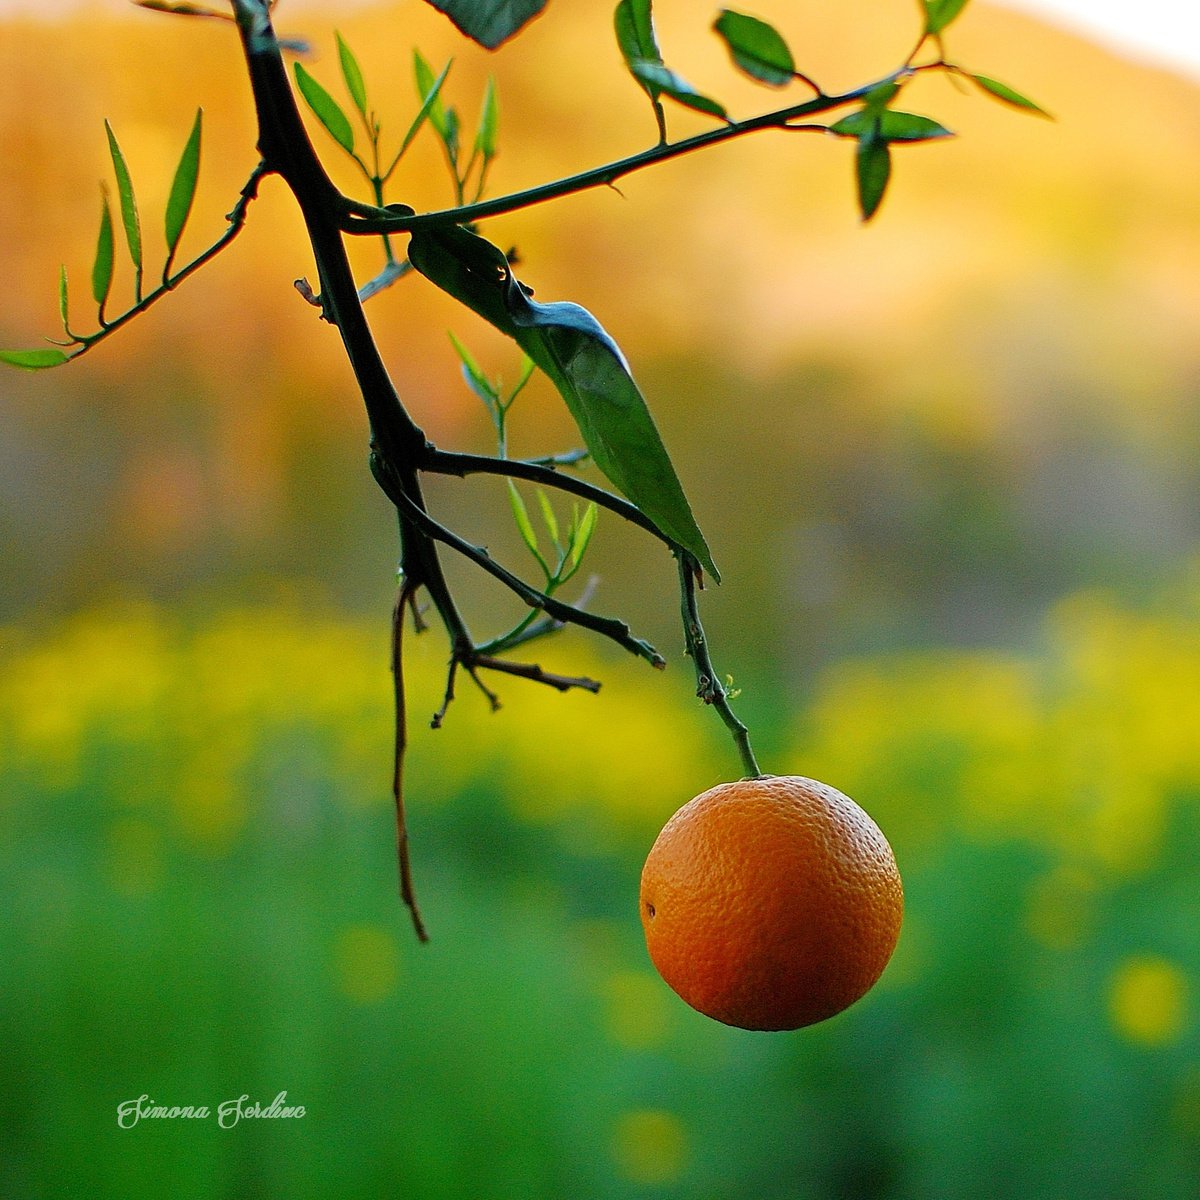 The orange by Simona Serdiuc